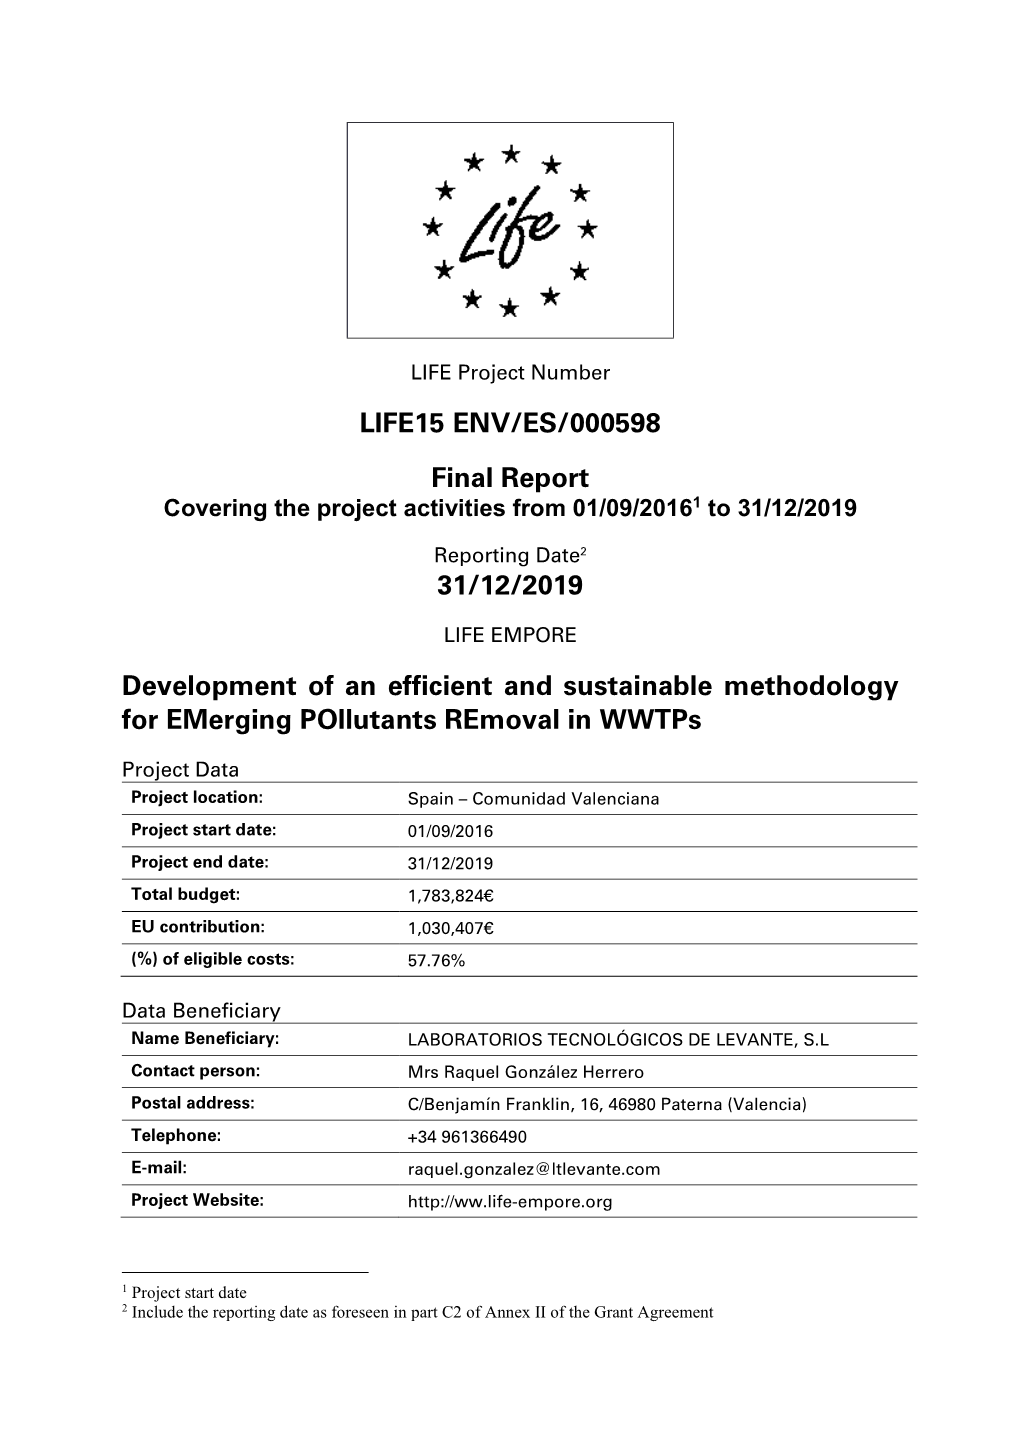 LIFE15 ENV/ES/000598 Final Report 31/12/2019 Development of An